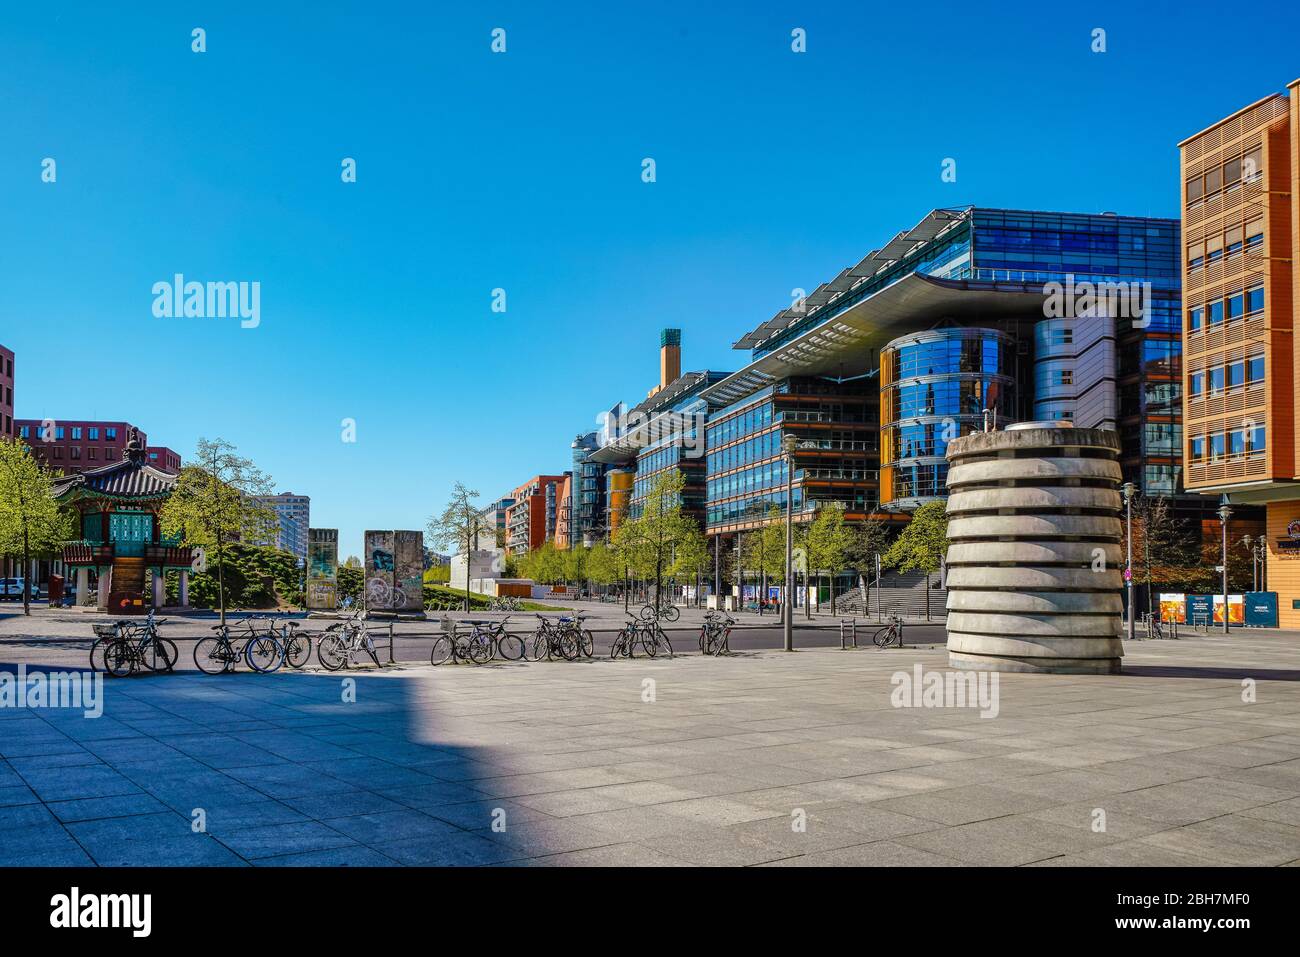 19 avril 2020, Berlin: La Potsdamer Platz à Berlin se flétrit lors d'une belle journée de printemps dans un merveilleux temps impérial et un ciel bleu vif avec le pavillon de l'unité, les vestiges du mur de Berlin et les arcades de la Potsdamer Platz. Le pavillon de l'unité est un après-bâtiment d'un pavillon hexagonal dans les jardins du palais royal de Changdeokgung (pavillon Sangnyangjeong) de la période Joseon (1392–1910) dans la métropole sud-coréenne de Séoul. | utilisation dans le monde entier Banque D'Images